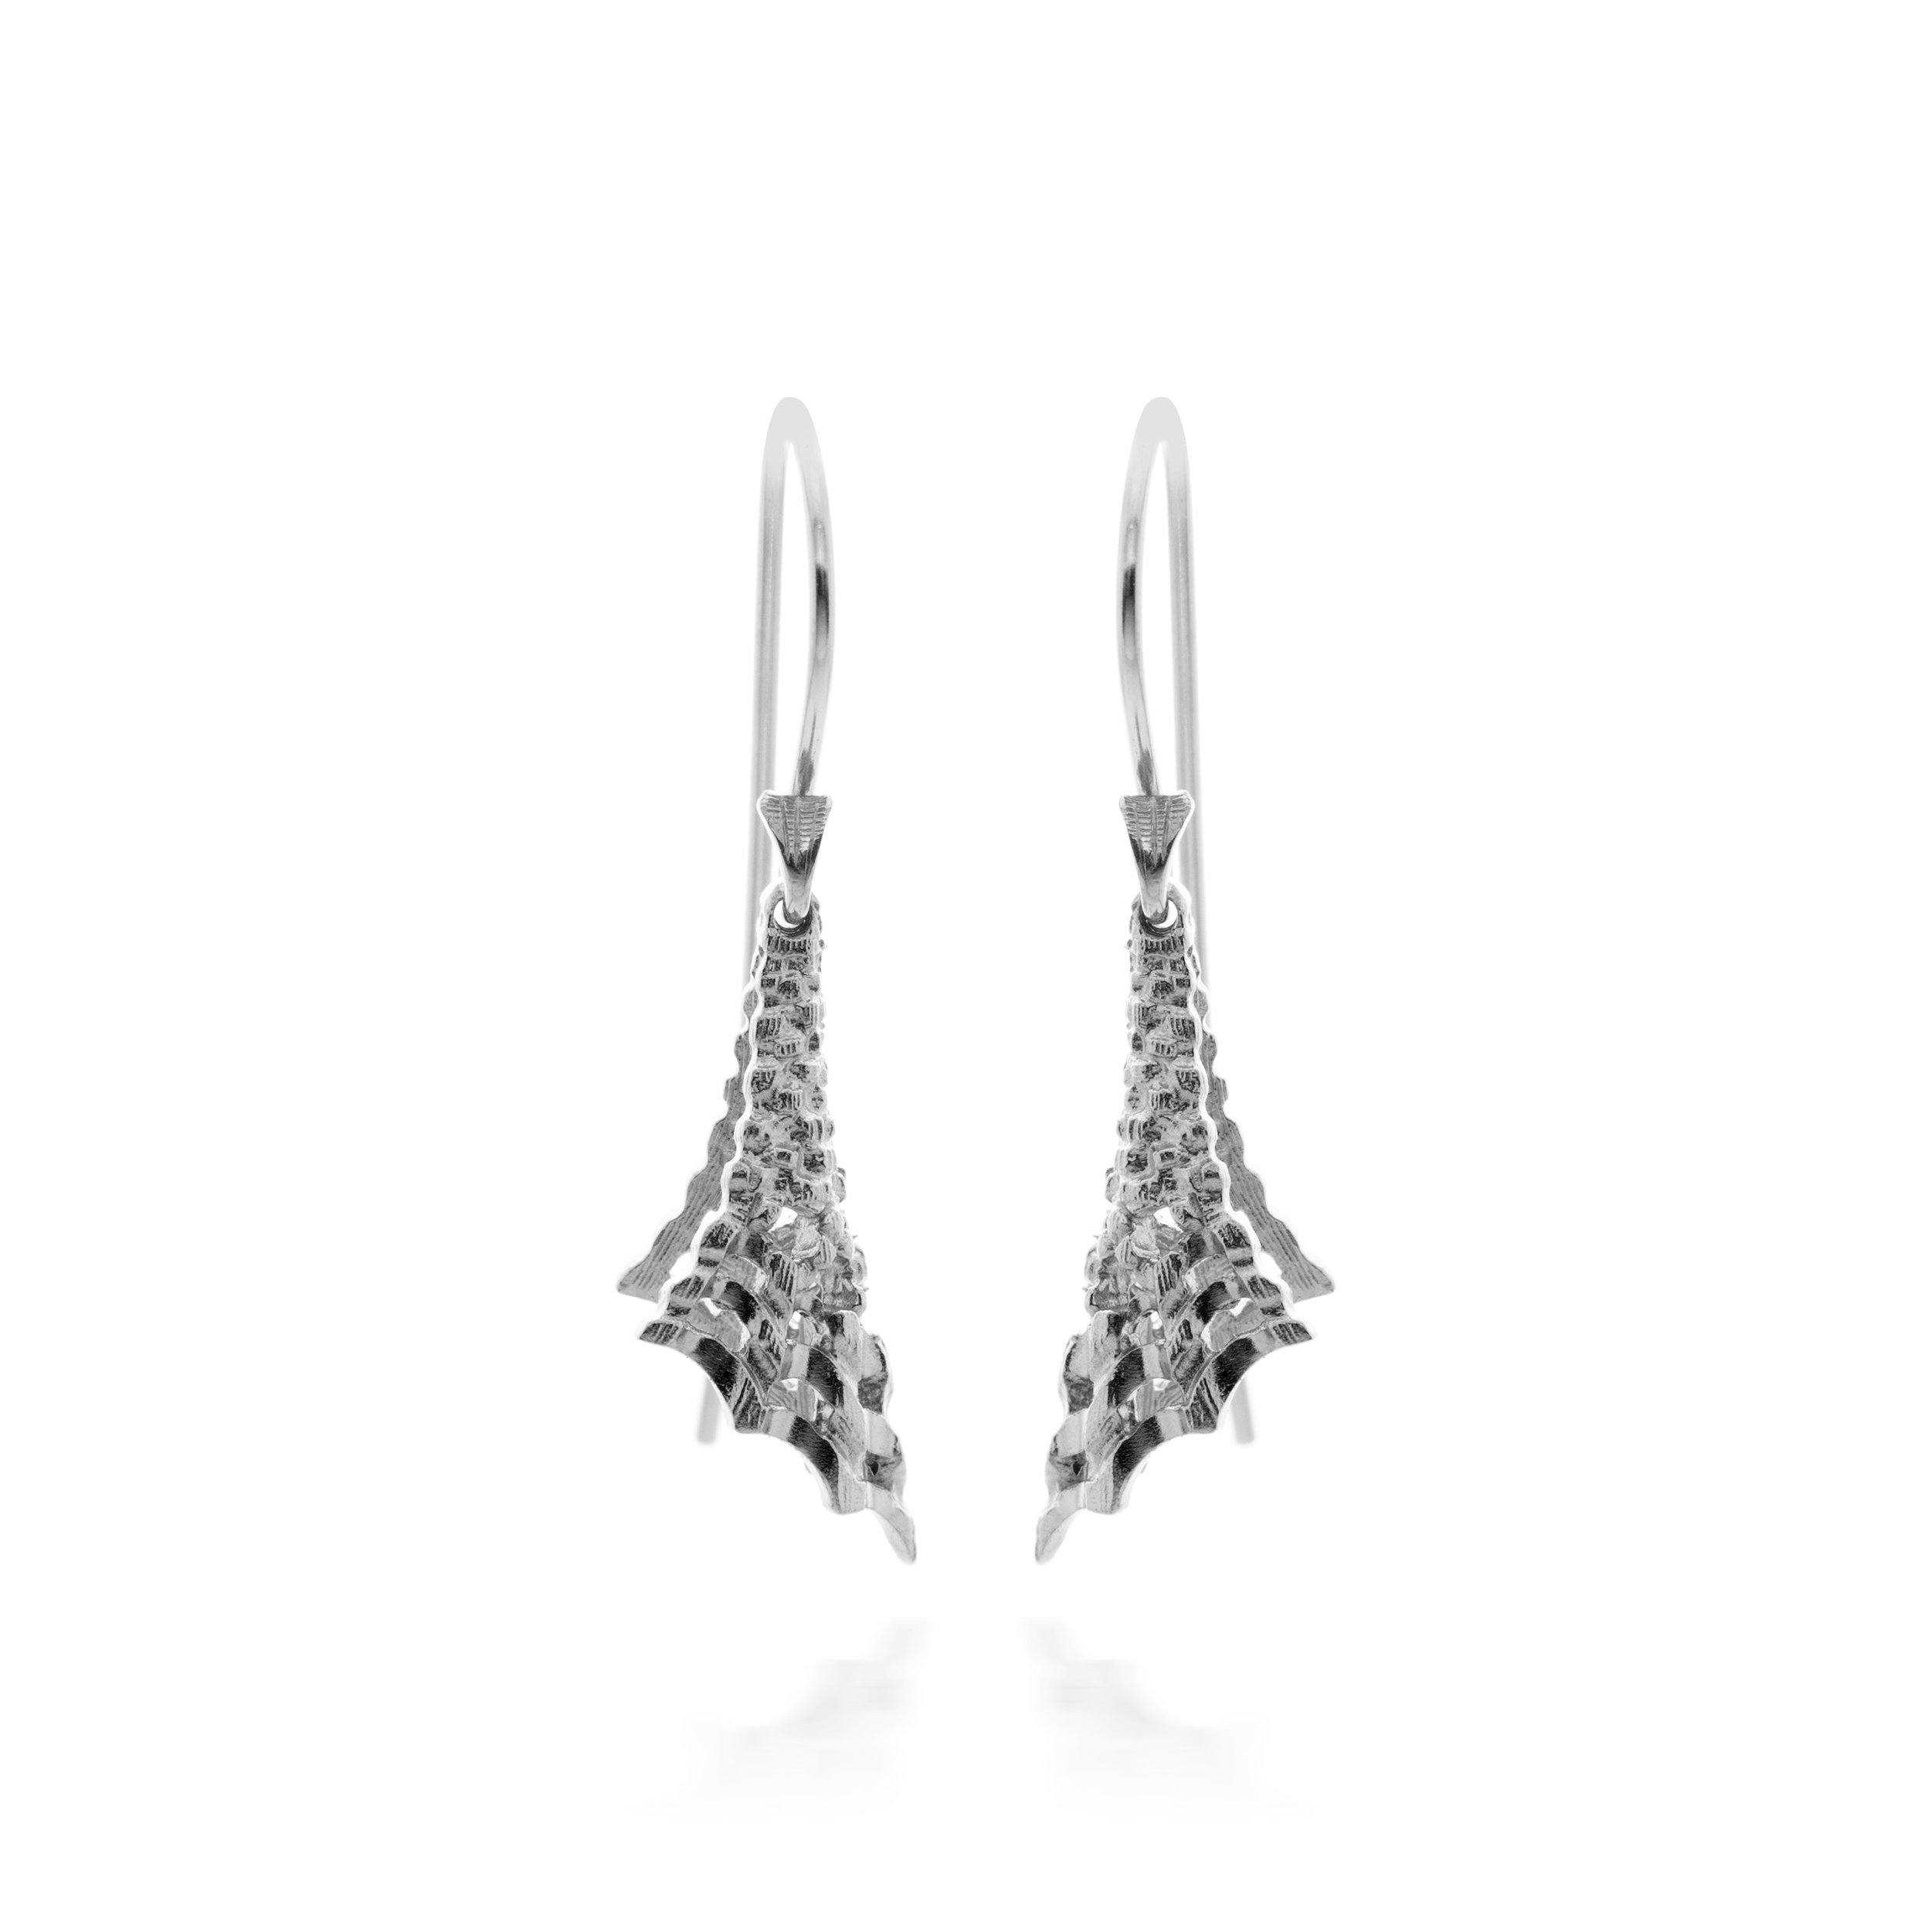 Drop earrings in silver